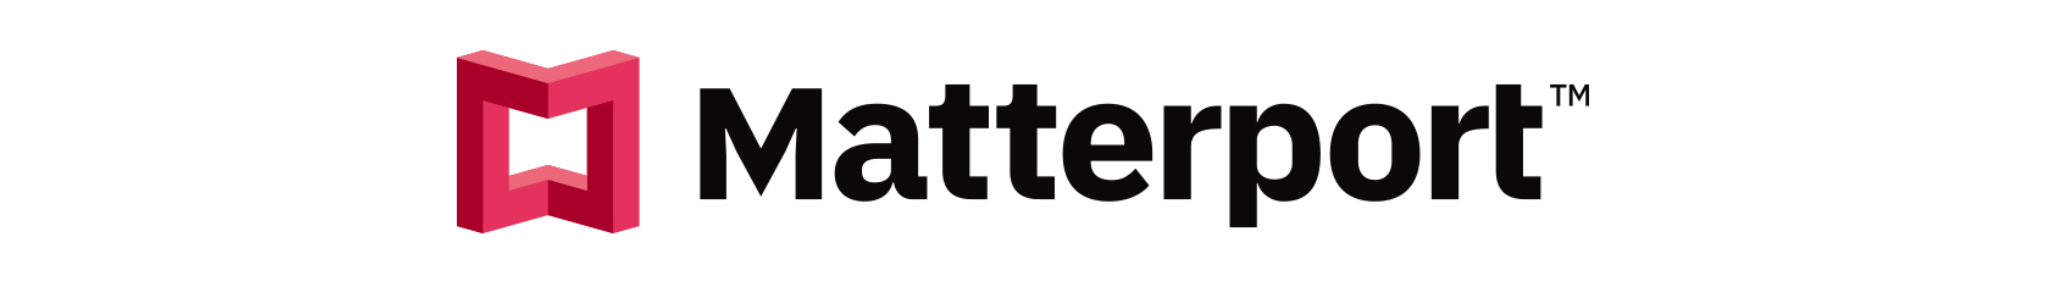 Matterport_Logo